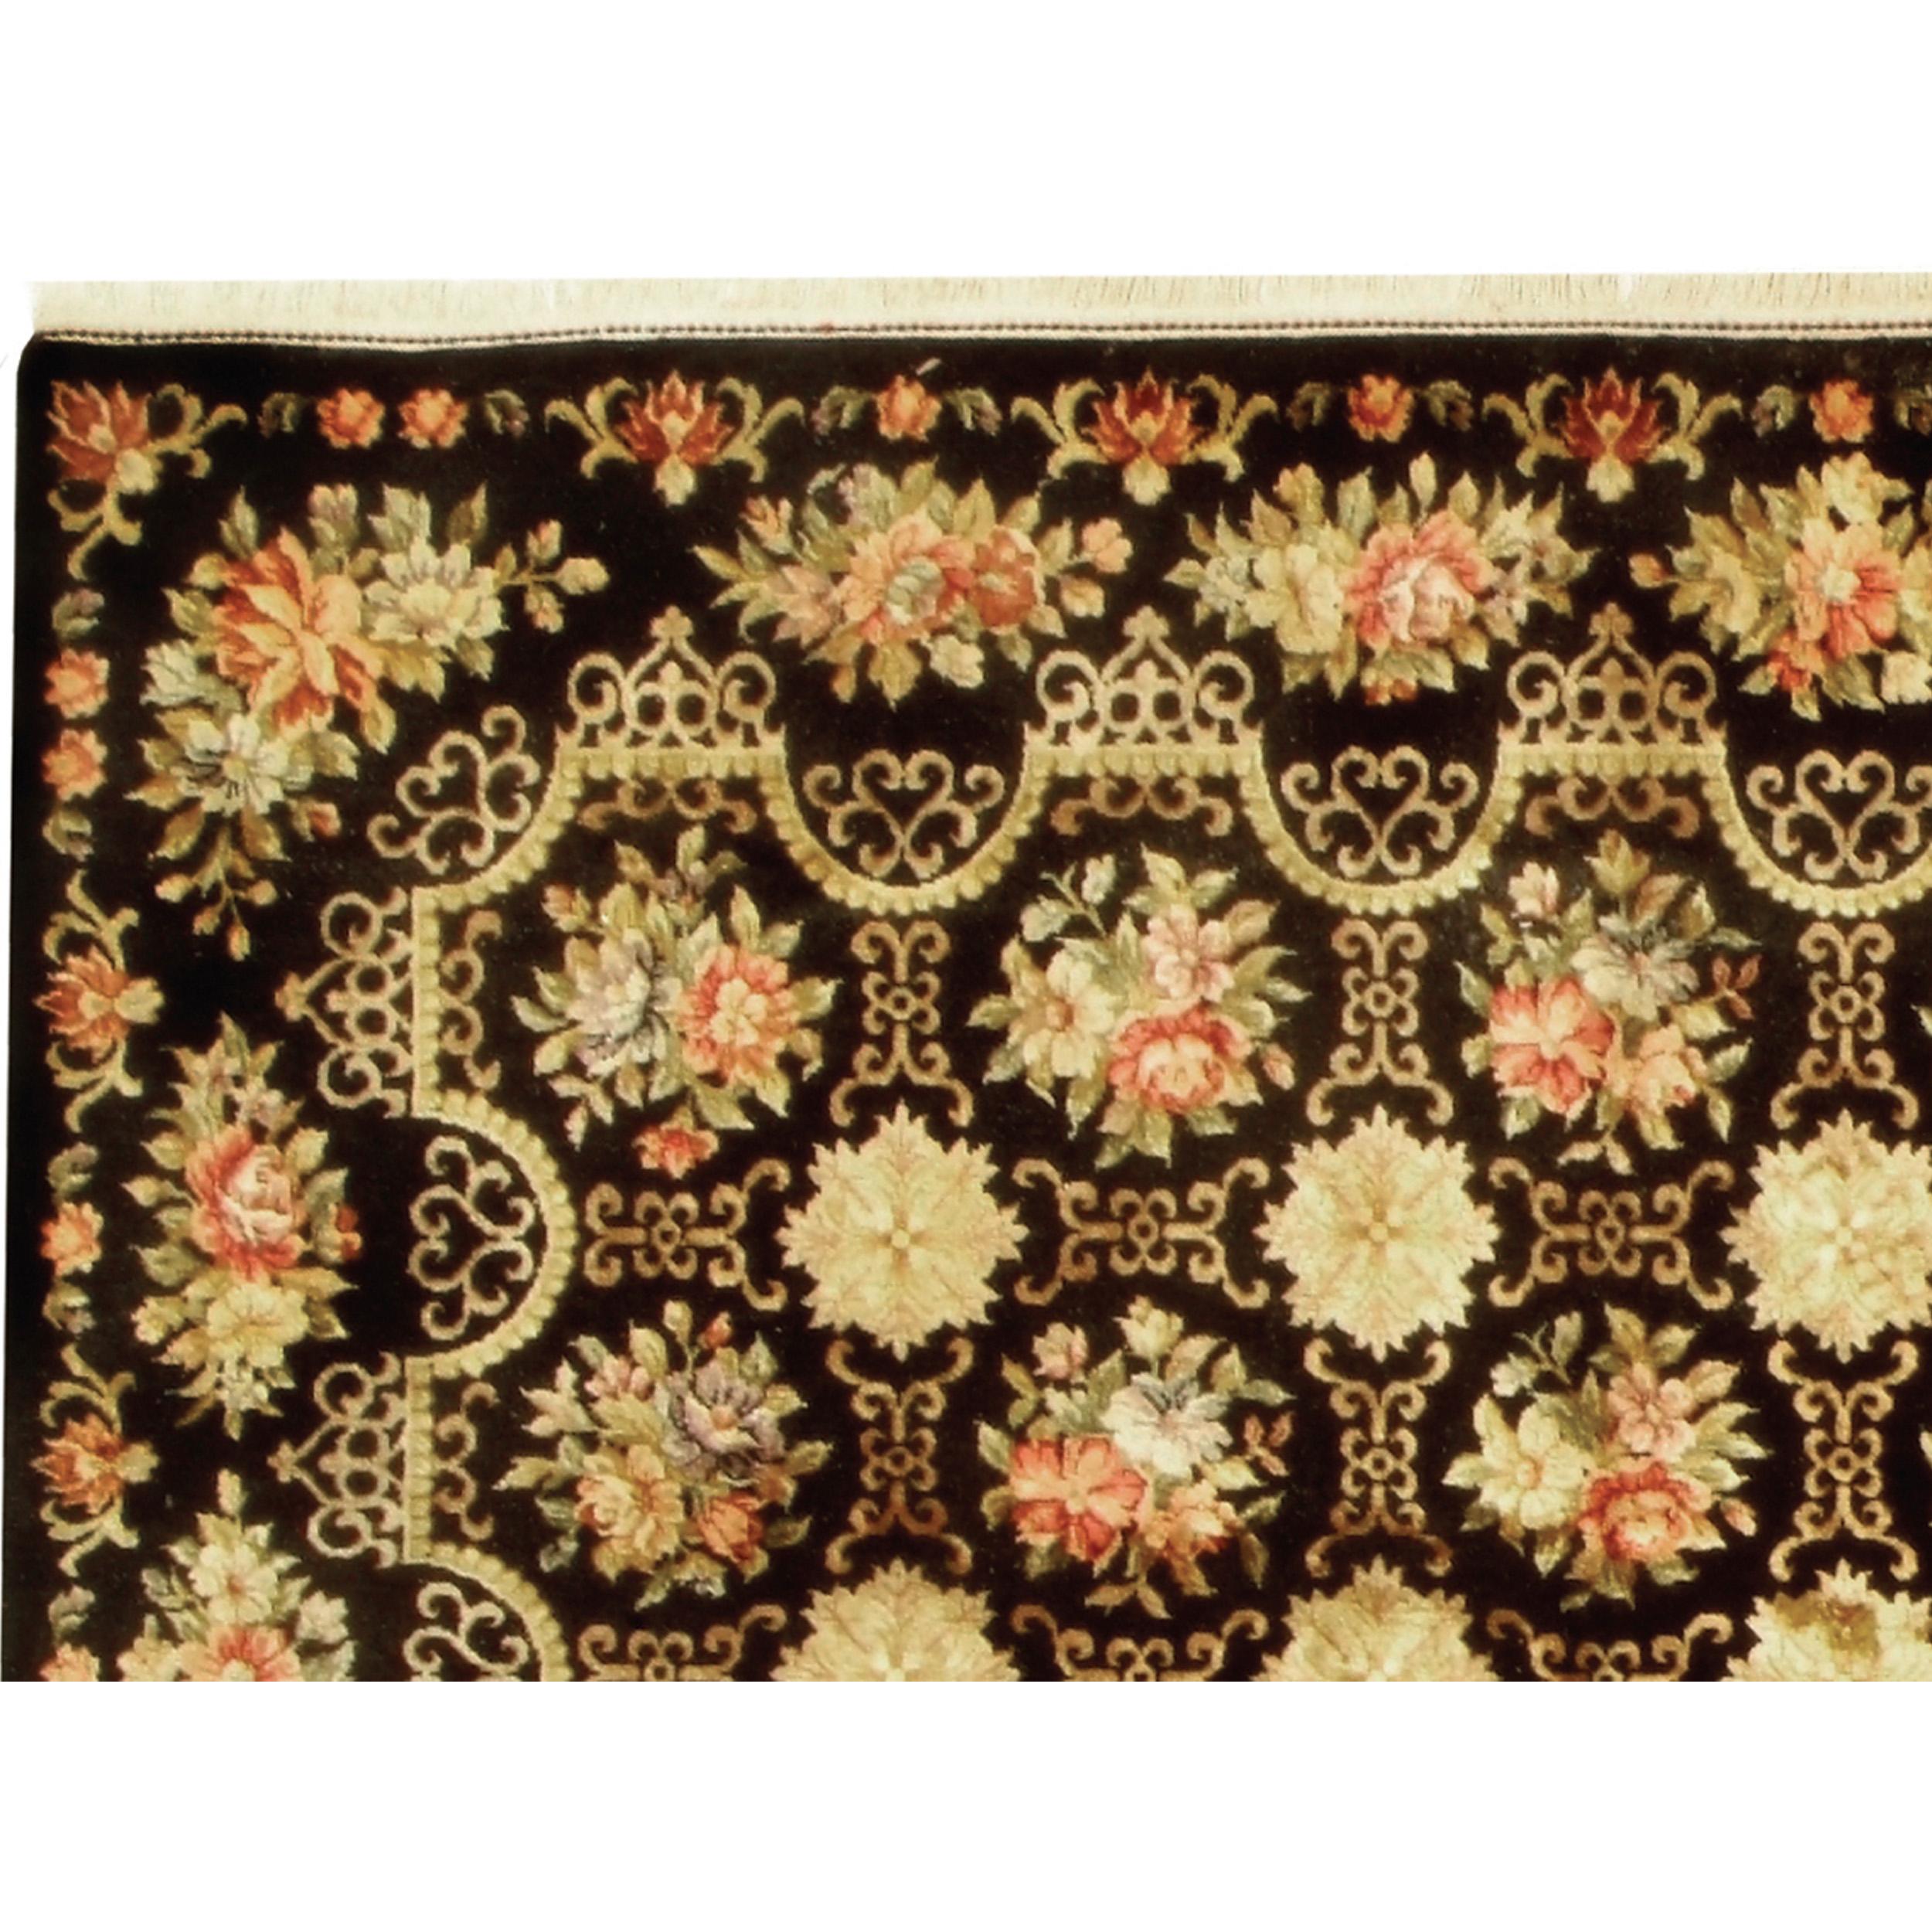 Issu du savoir-faire artisanal de la Chine, ce tapis est un exemple parfait de l'art des tapis empilés, mêlant harmonieusement le design traditionnel français et européen. La couleur de fond de ce tapis est formée par les riches fibres résilientes